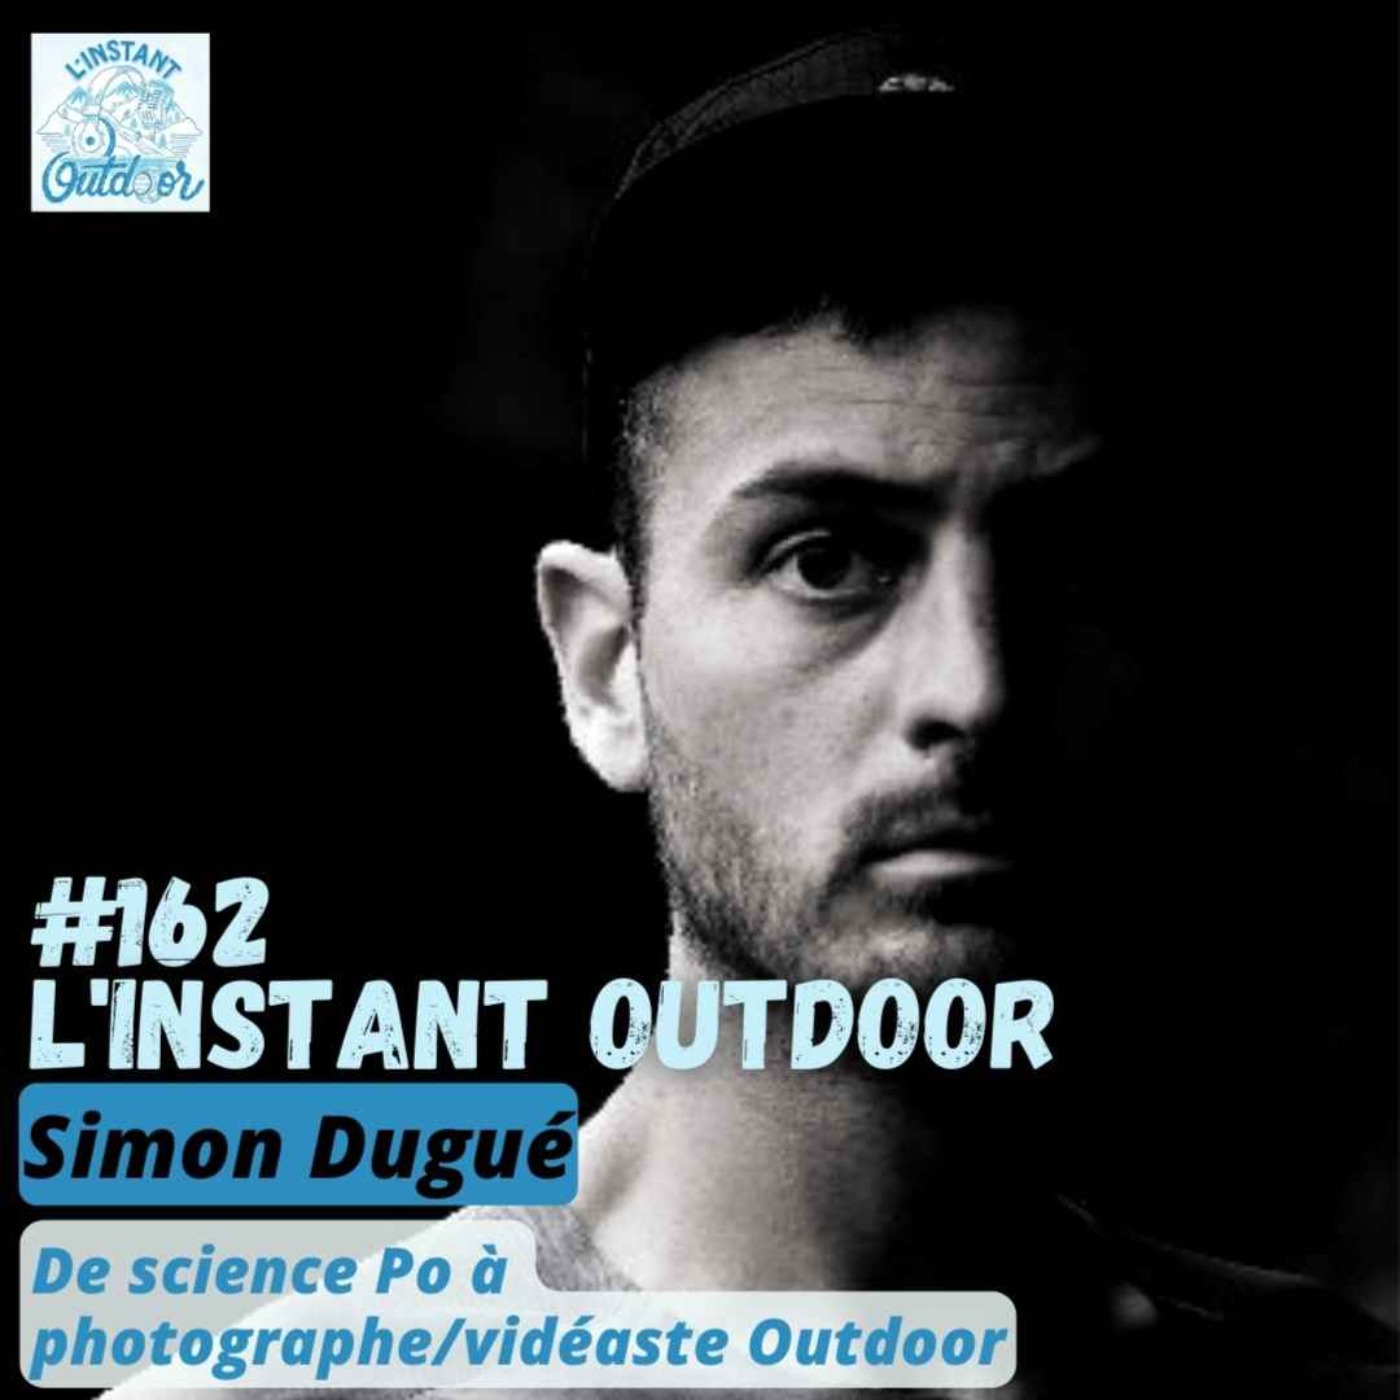 Simon Dugué - De science Po à photographe/vidéaste Outdoor